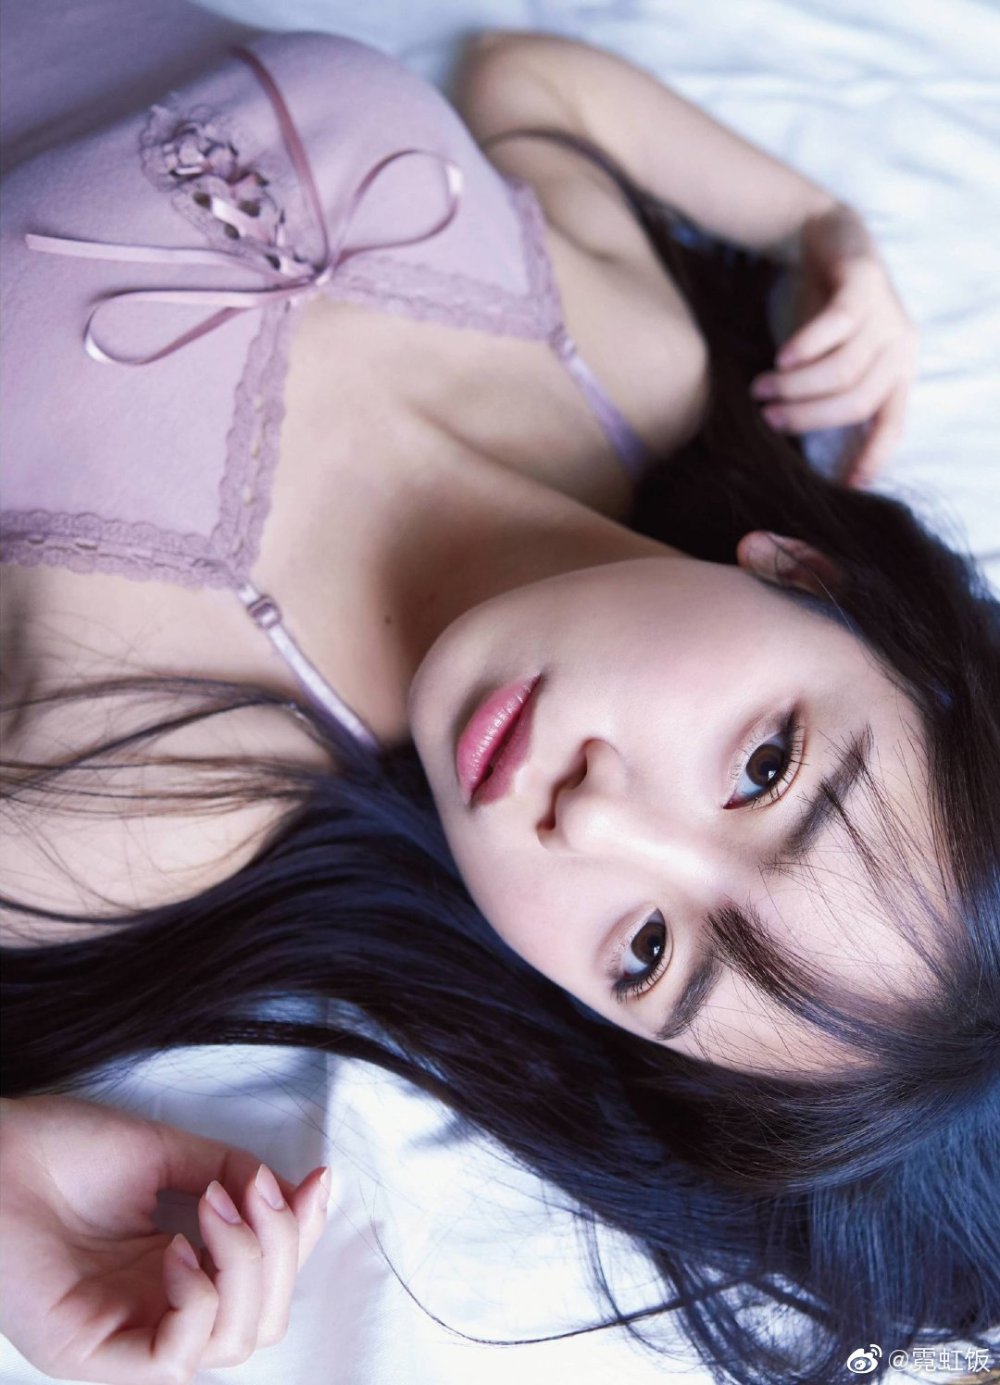 Kyoko Saito Sexy and Hottest Photos , Latest Pics